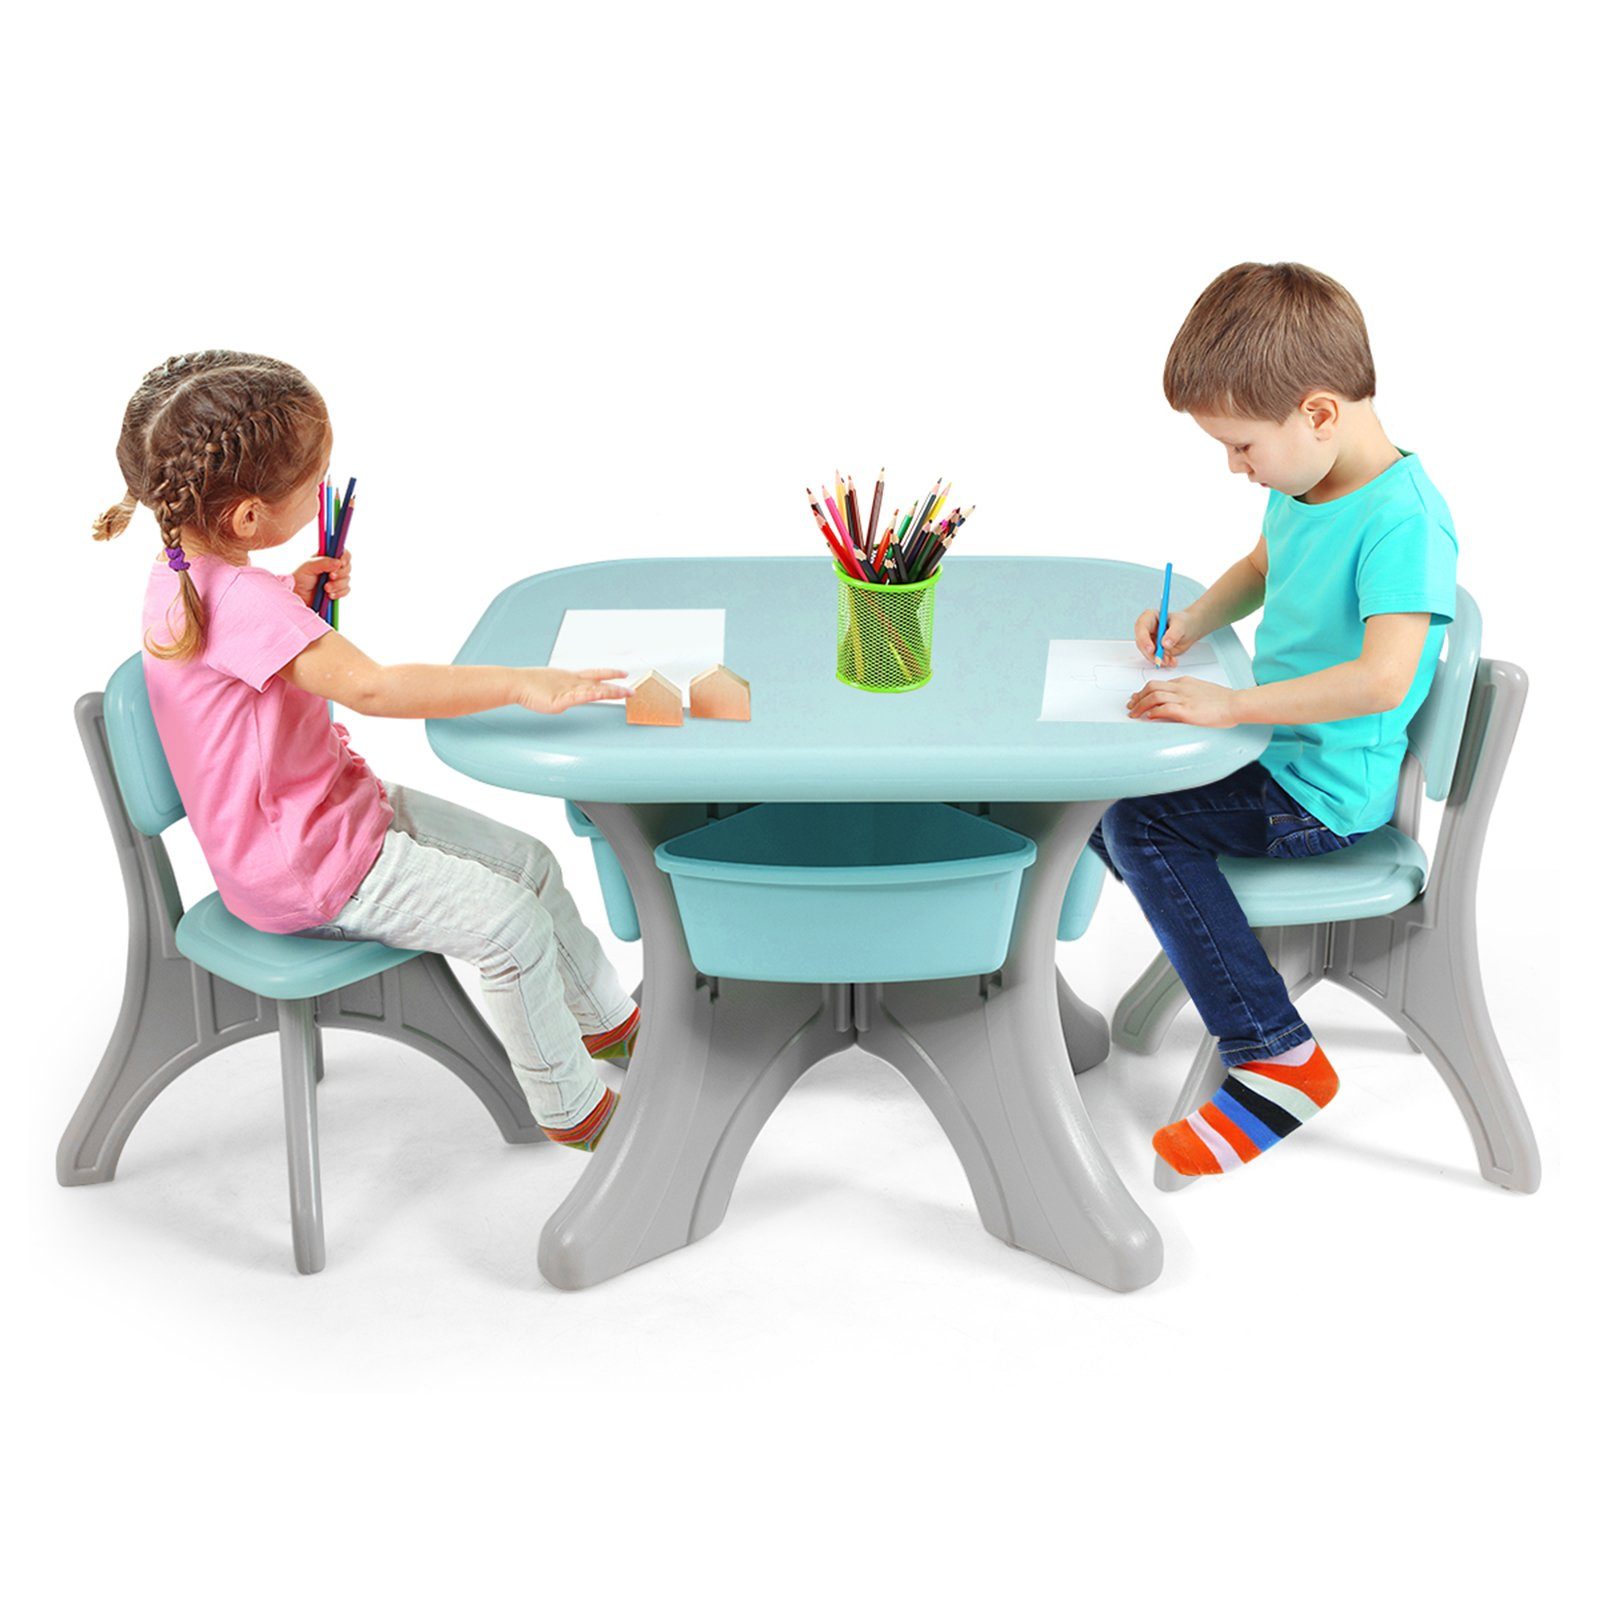 COSTWAY Kindersitzgruppe, mit 2 Kunststoff Stühlen&Kindertisch, mit Stauraum, Grün